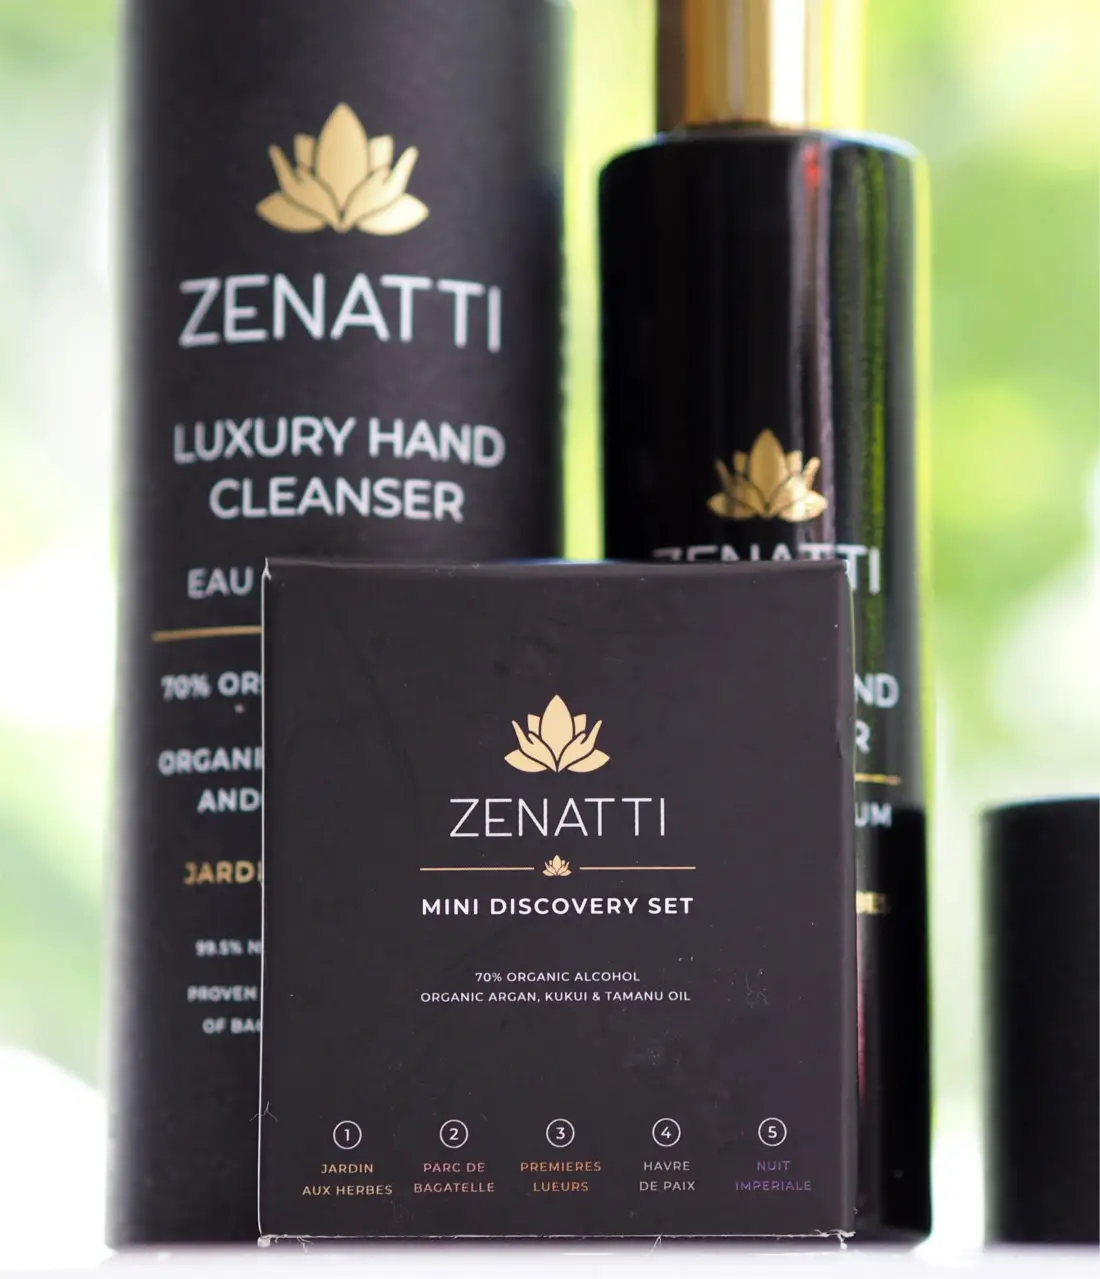 Zenatti Luxury Hand Cleanser